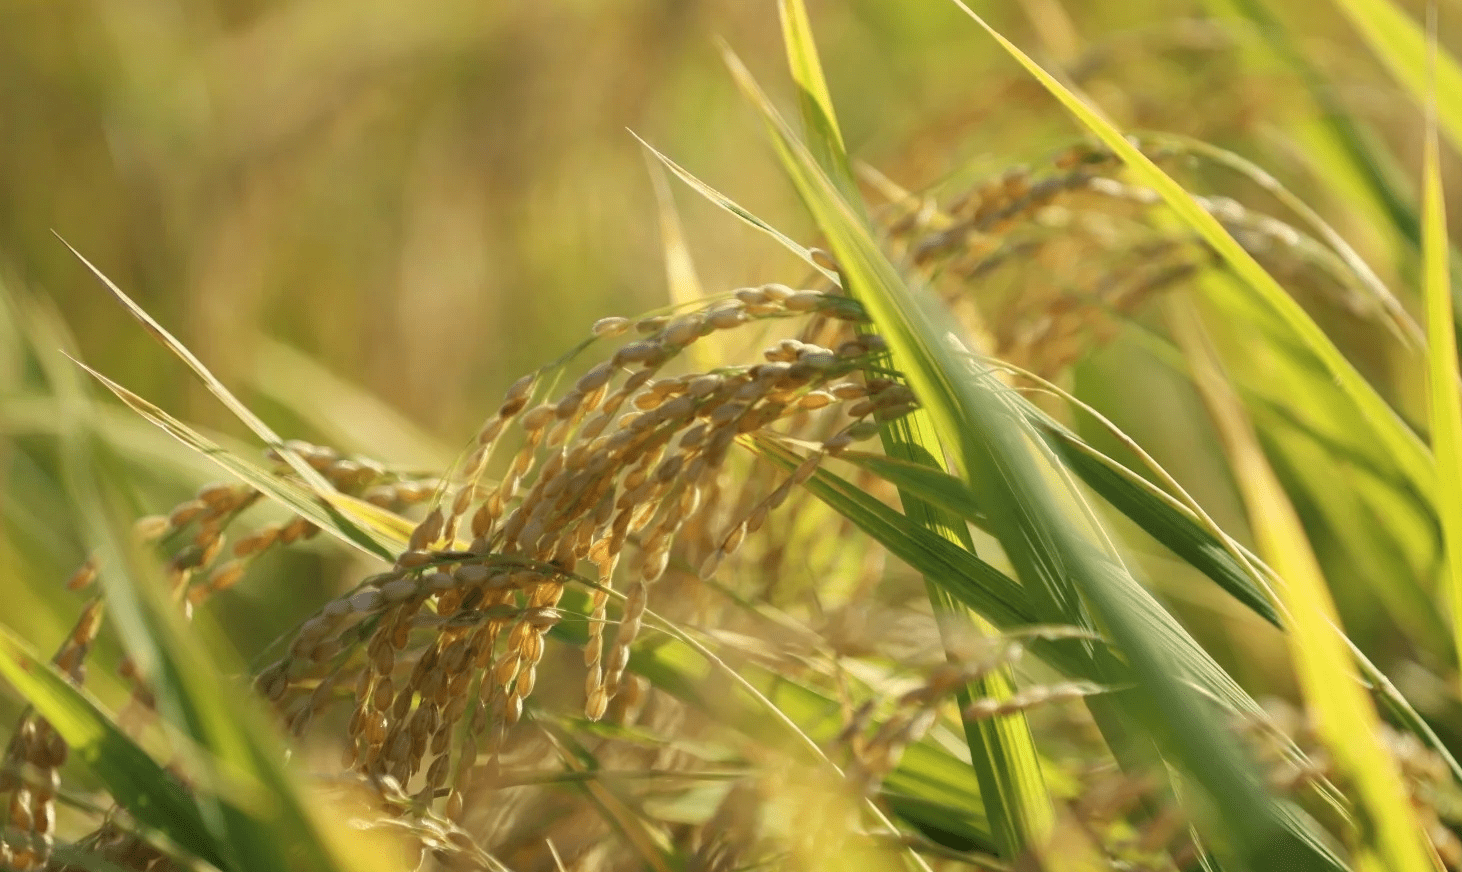 丰收季节黄澄澄的稻谷整个田野就像一块金色的地毯